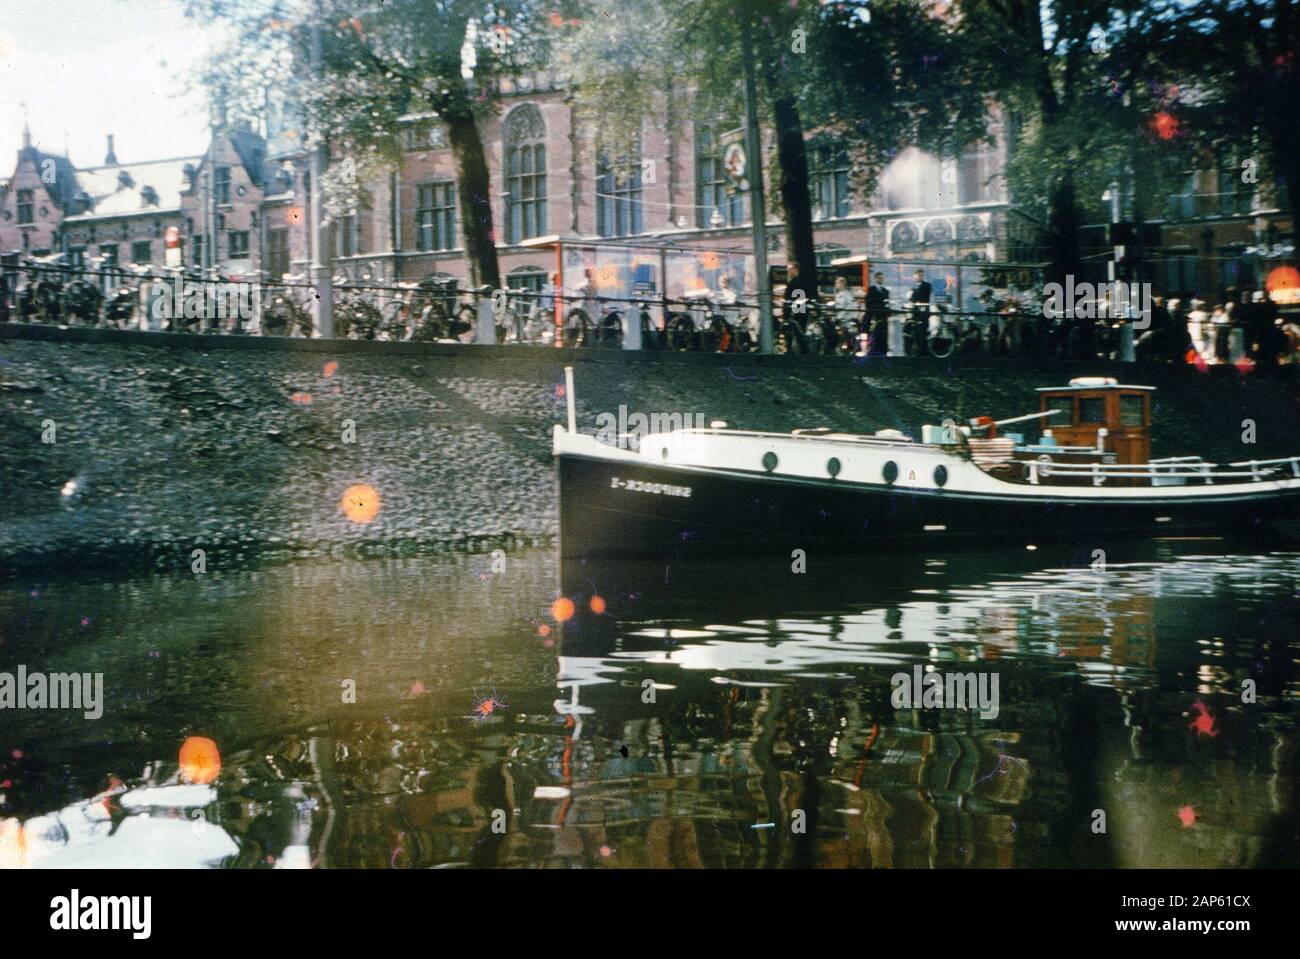 Photo vernaculaire prise sur un film analogique de 35 mm transparent, qui est censé représenter les personnes qui naviguent sur un bateau blanc sur l'eau pendant la journée sur le canal, 1965. Les principaux sujets/objets détectés sont l'eau, le bateau, la ville, la réflexion, le véhicule et le tourisme. () Banque D'Images